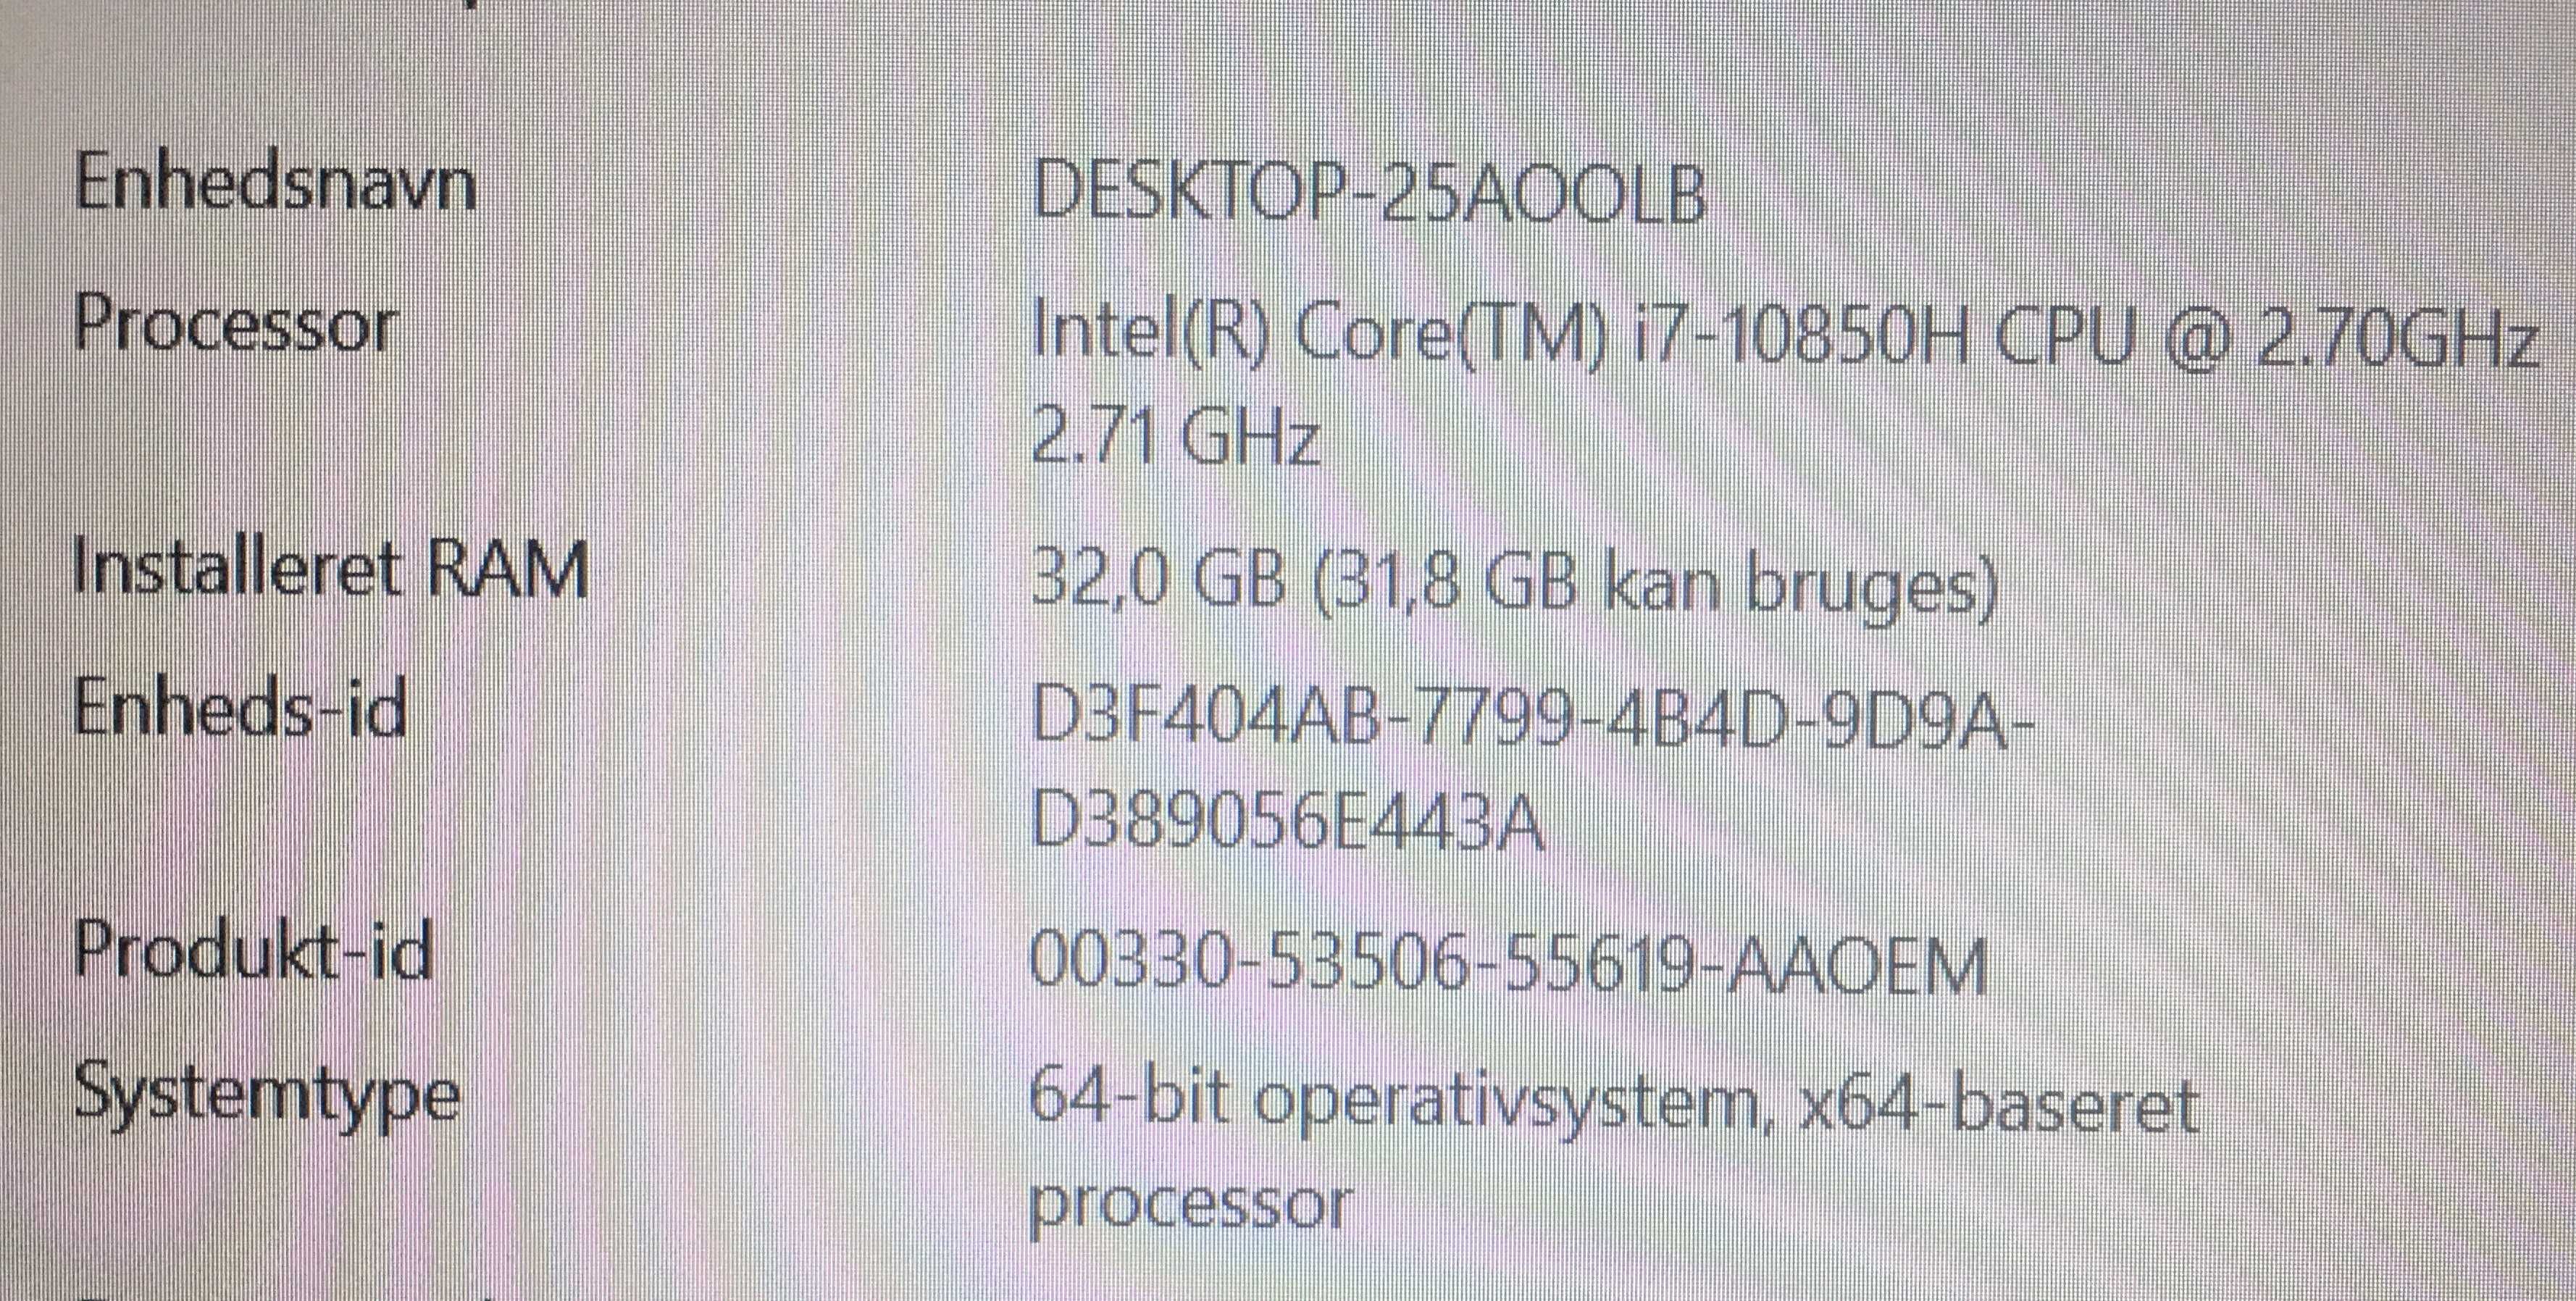 Lenovo ThinkPad P15 15,6"IPS Nvidia RTX3000 6Gb, i7 10850H, 32/512